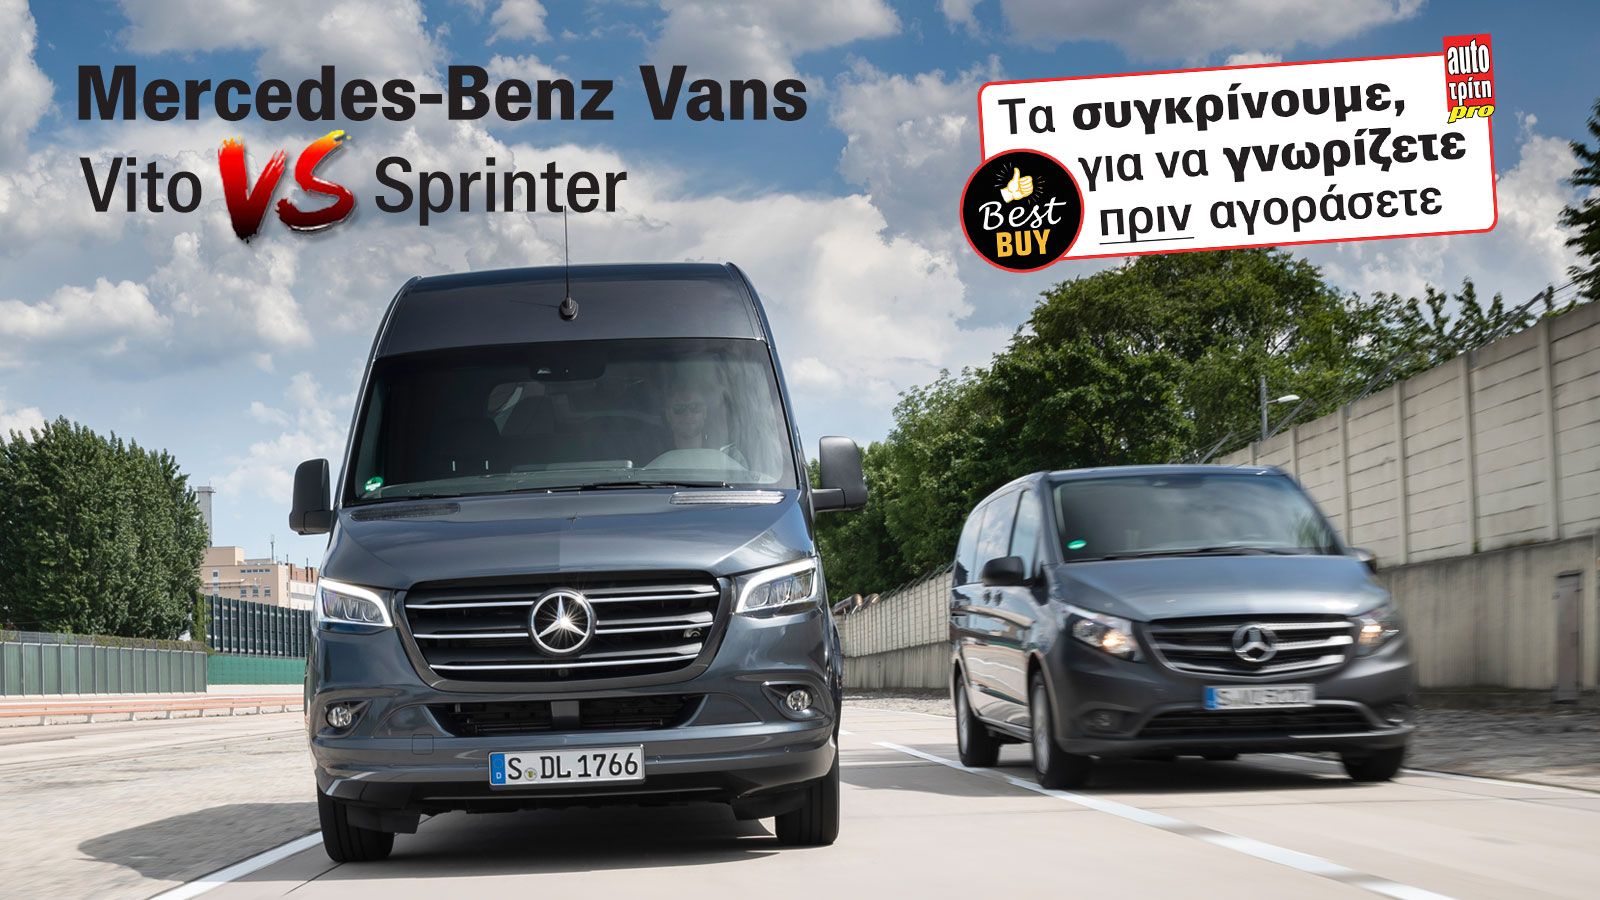 Συγκρίνουμε τις μεταφορικές δυνατότητες των βασικών εκδόσεων μήκους (Compact) του πισωκίνητου Vito Van 110 CDI και του προσθιοκίνητου Sprinter Van 211 CDI.